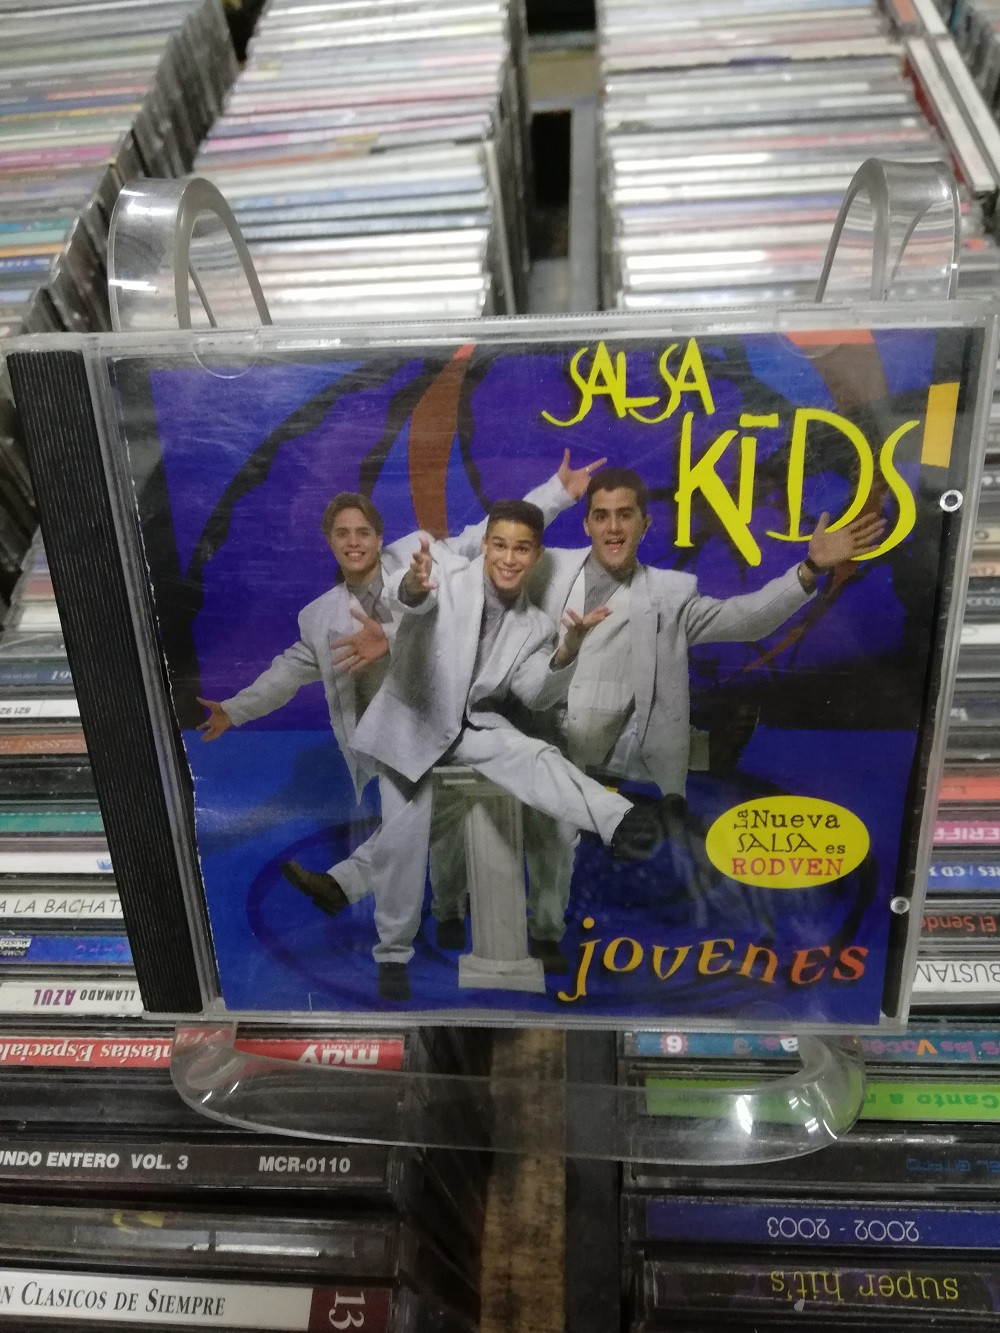 Imagen CD SALSA KIDS - JOVENES 1